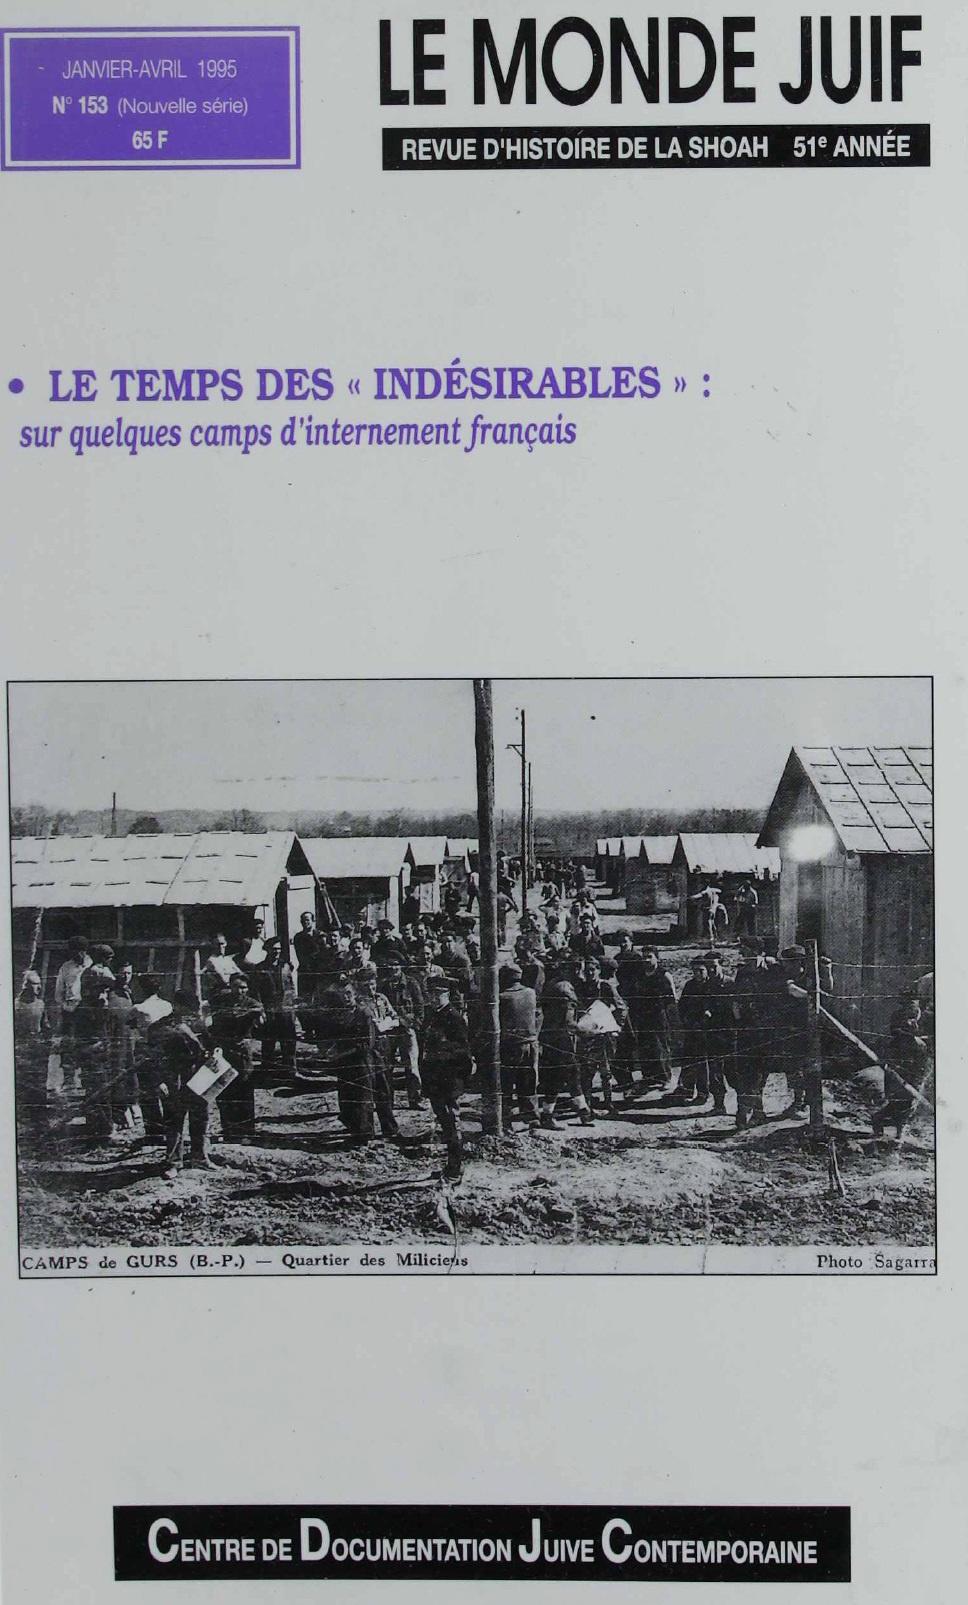 Une photo en noir et blanc montre des prisonniers dans un camp dinternement français.